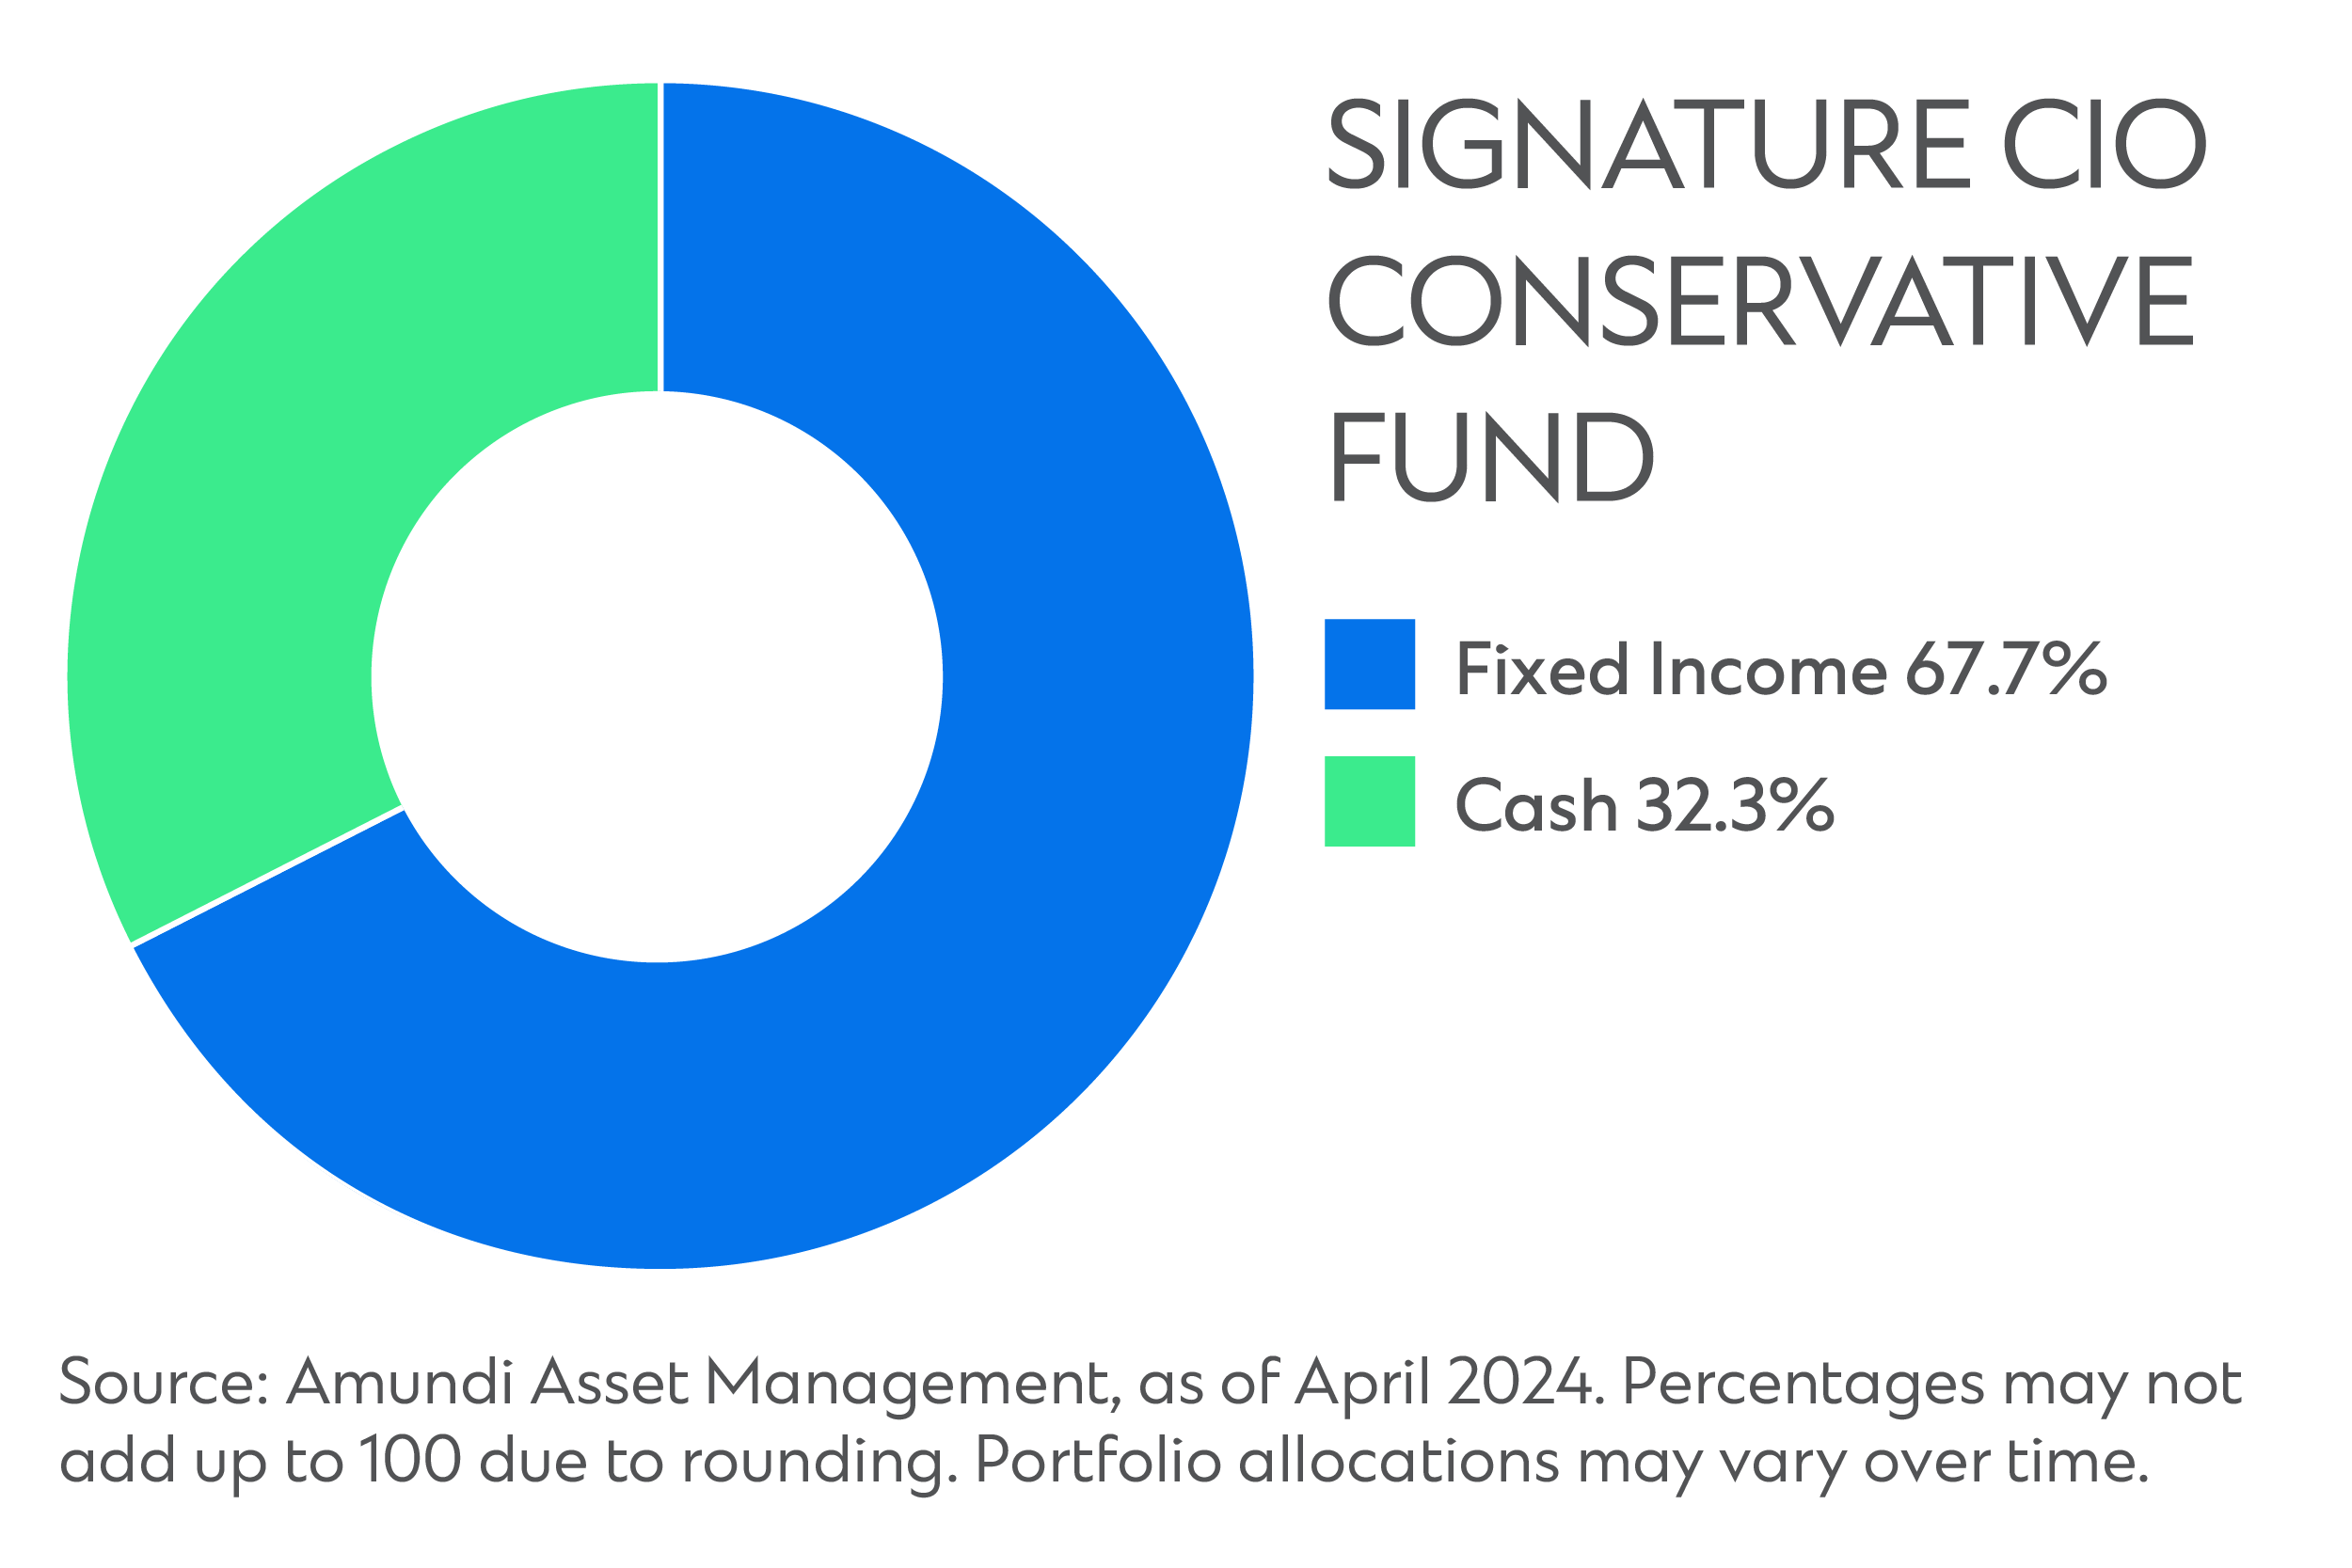 Sg signature cio conservative fund new